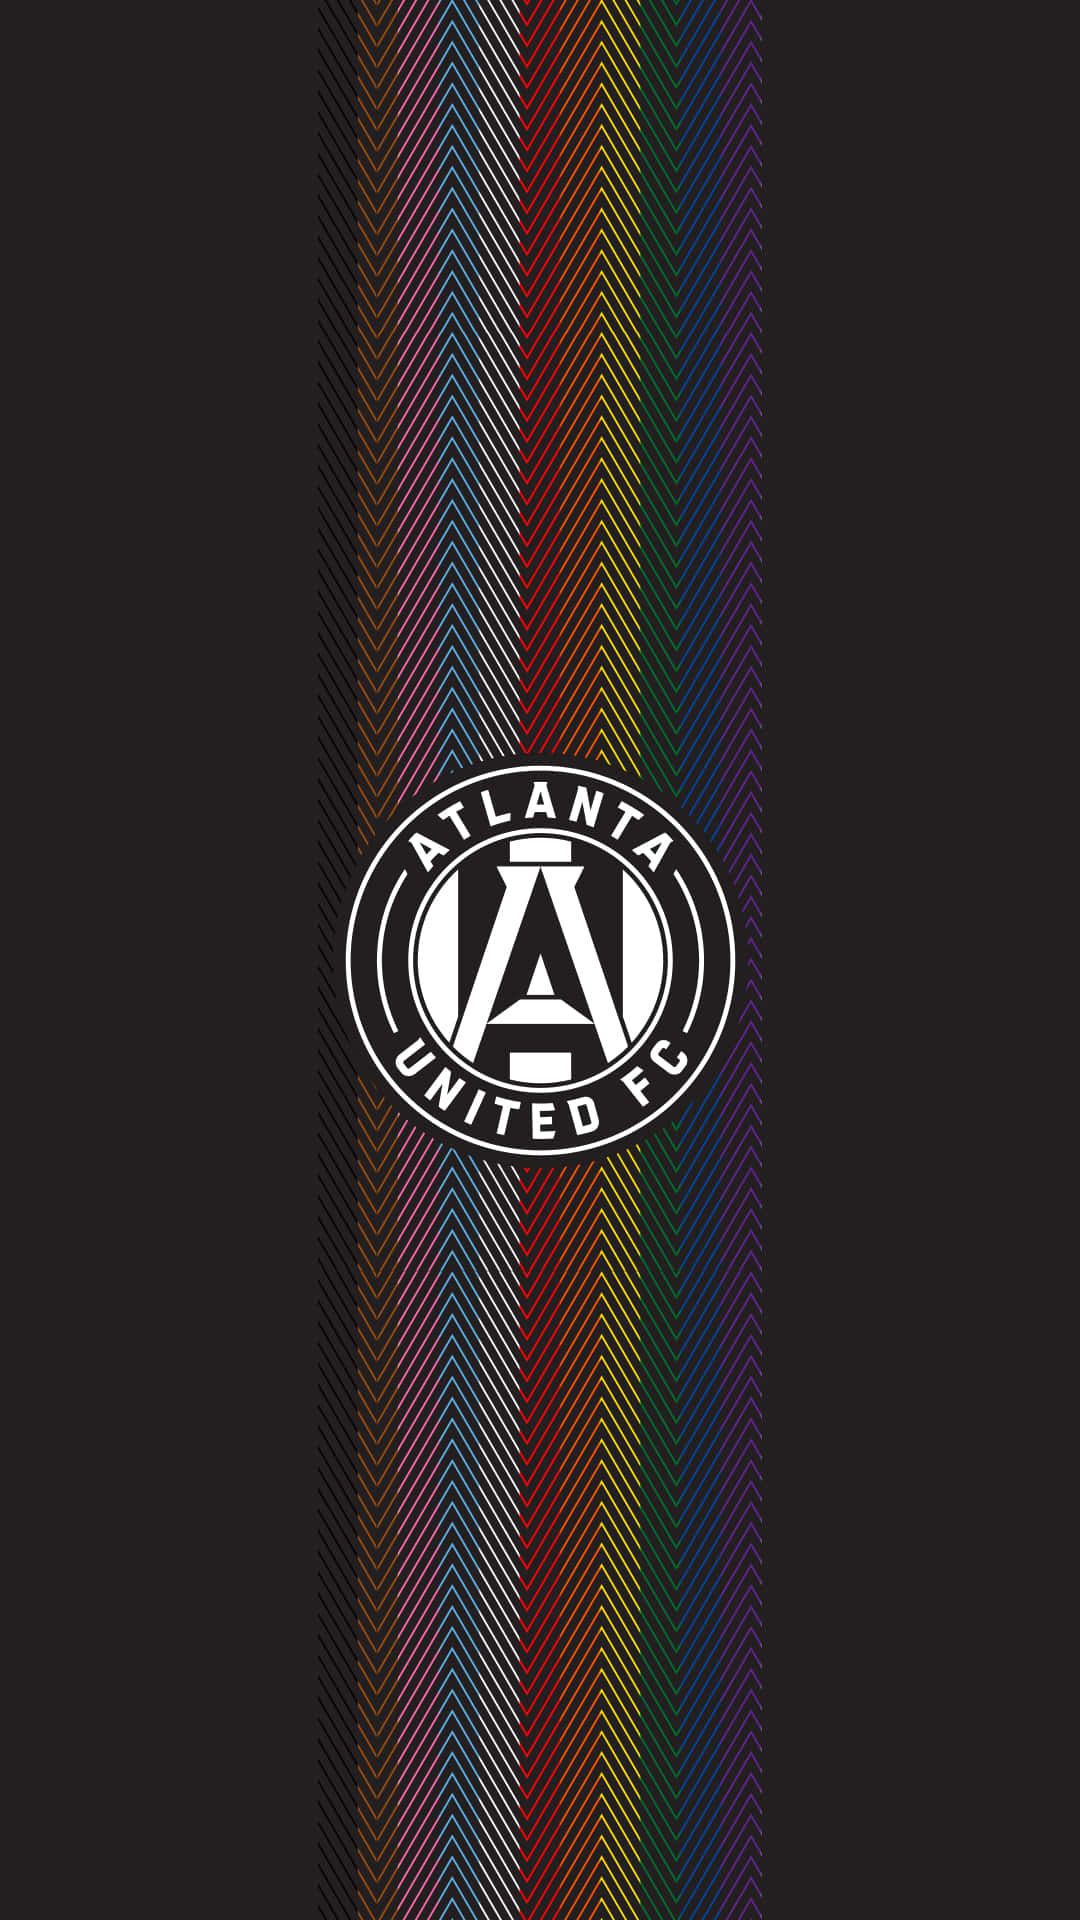 Logode Atlanta United Fc En Líneas De Gradiente De Estilo Retro Wave. Fondo de pantalla